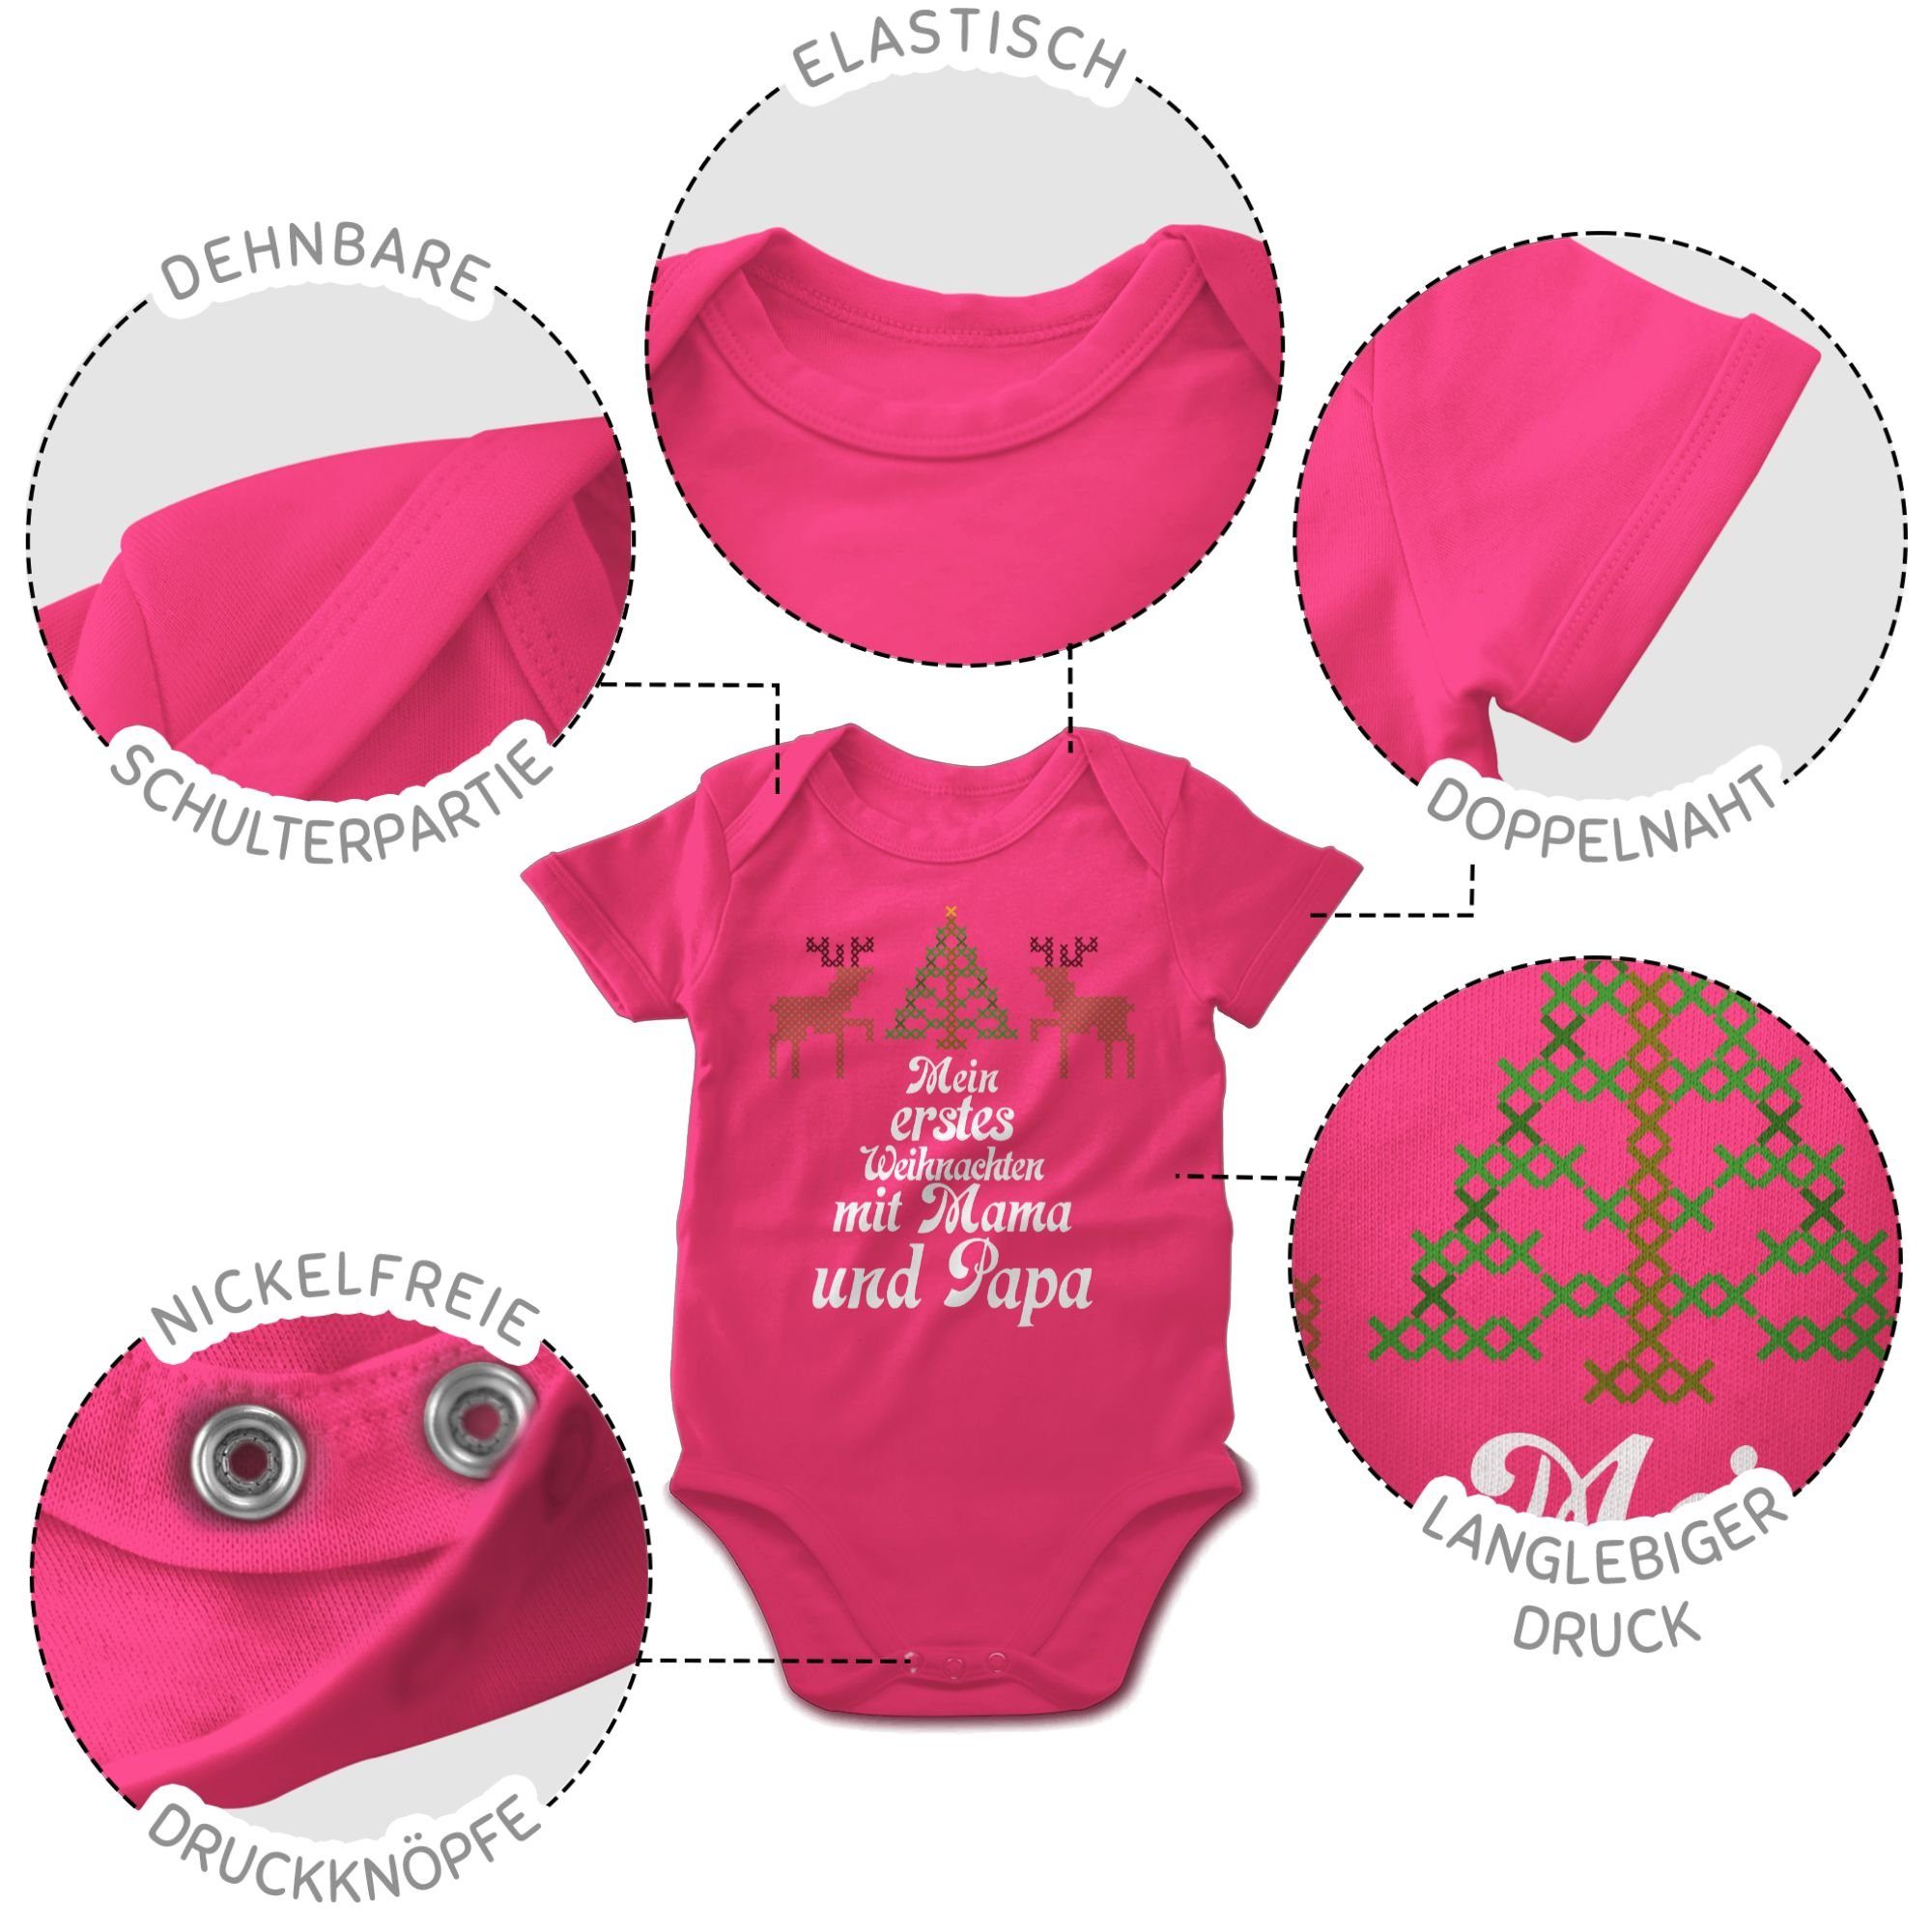 2 - Baby Weihnachten Fuchsia Kleidung erstes Shirtbody Weihnachten Mein Shirtracer sweater Rentiere - Ugly